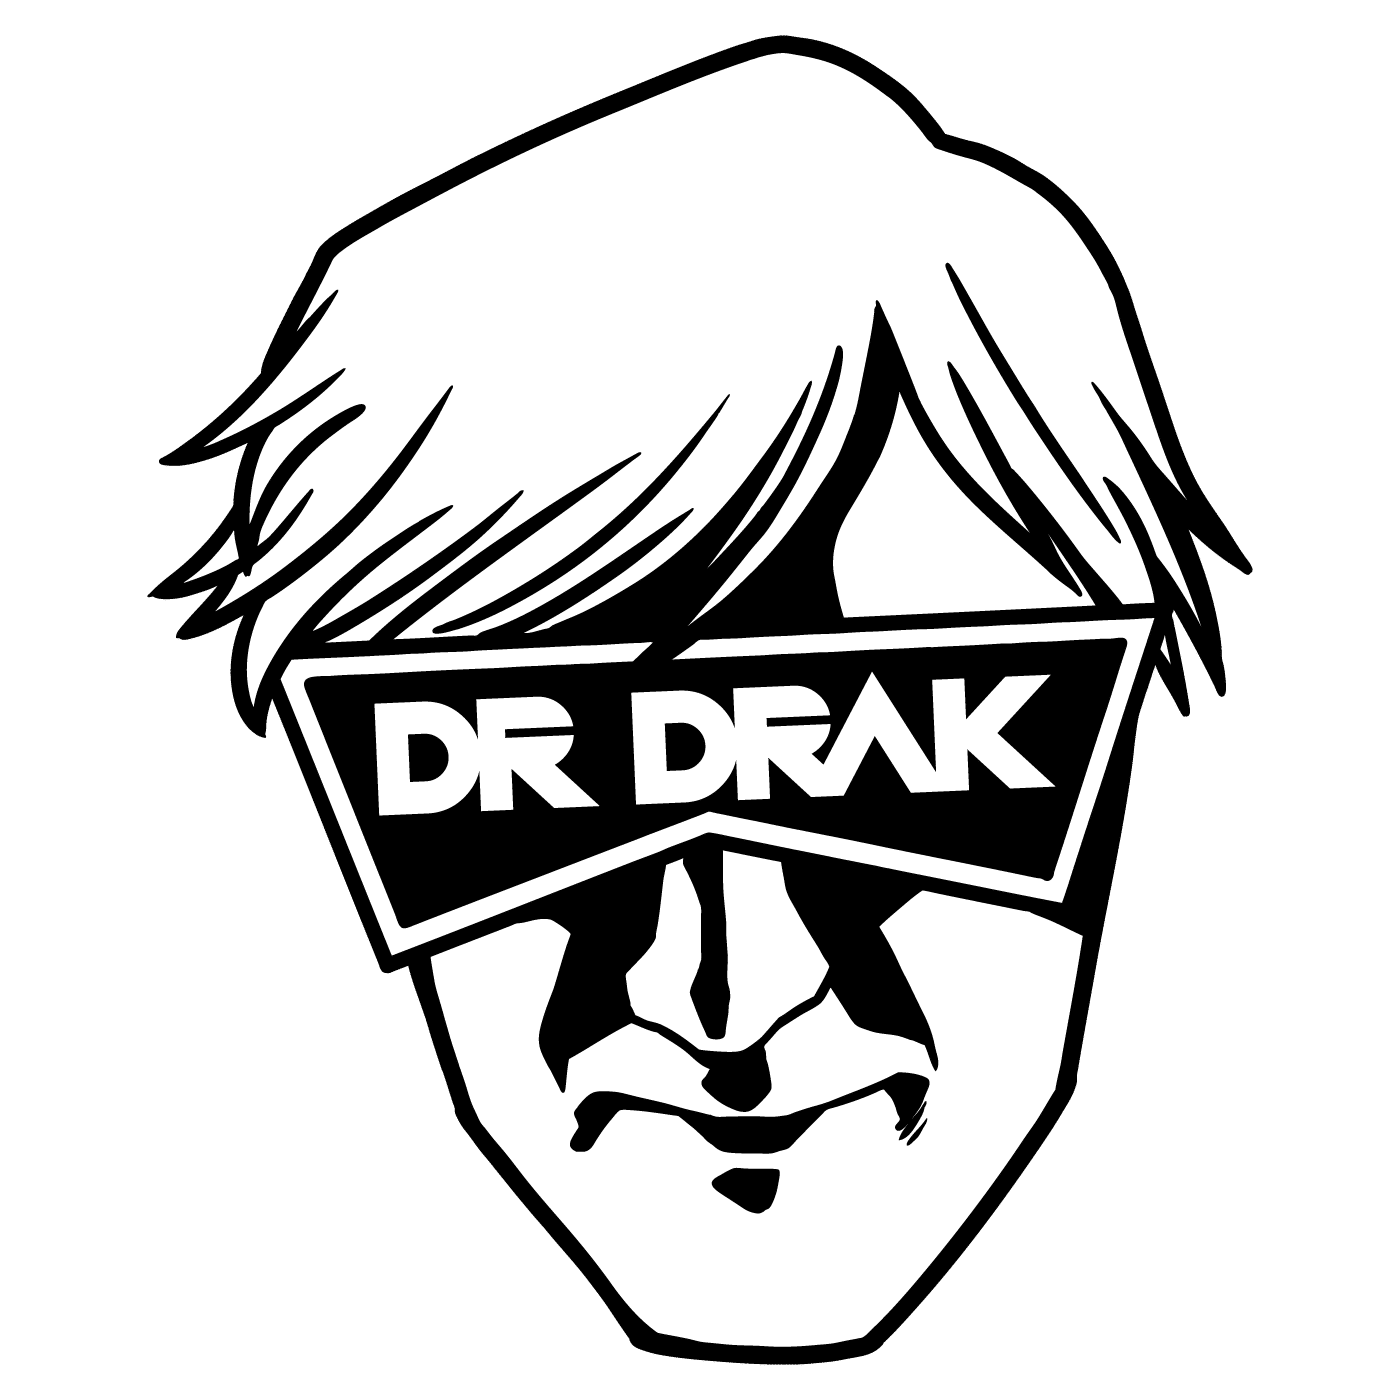 Dr Drak